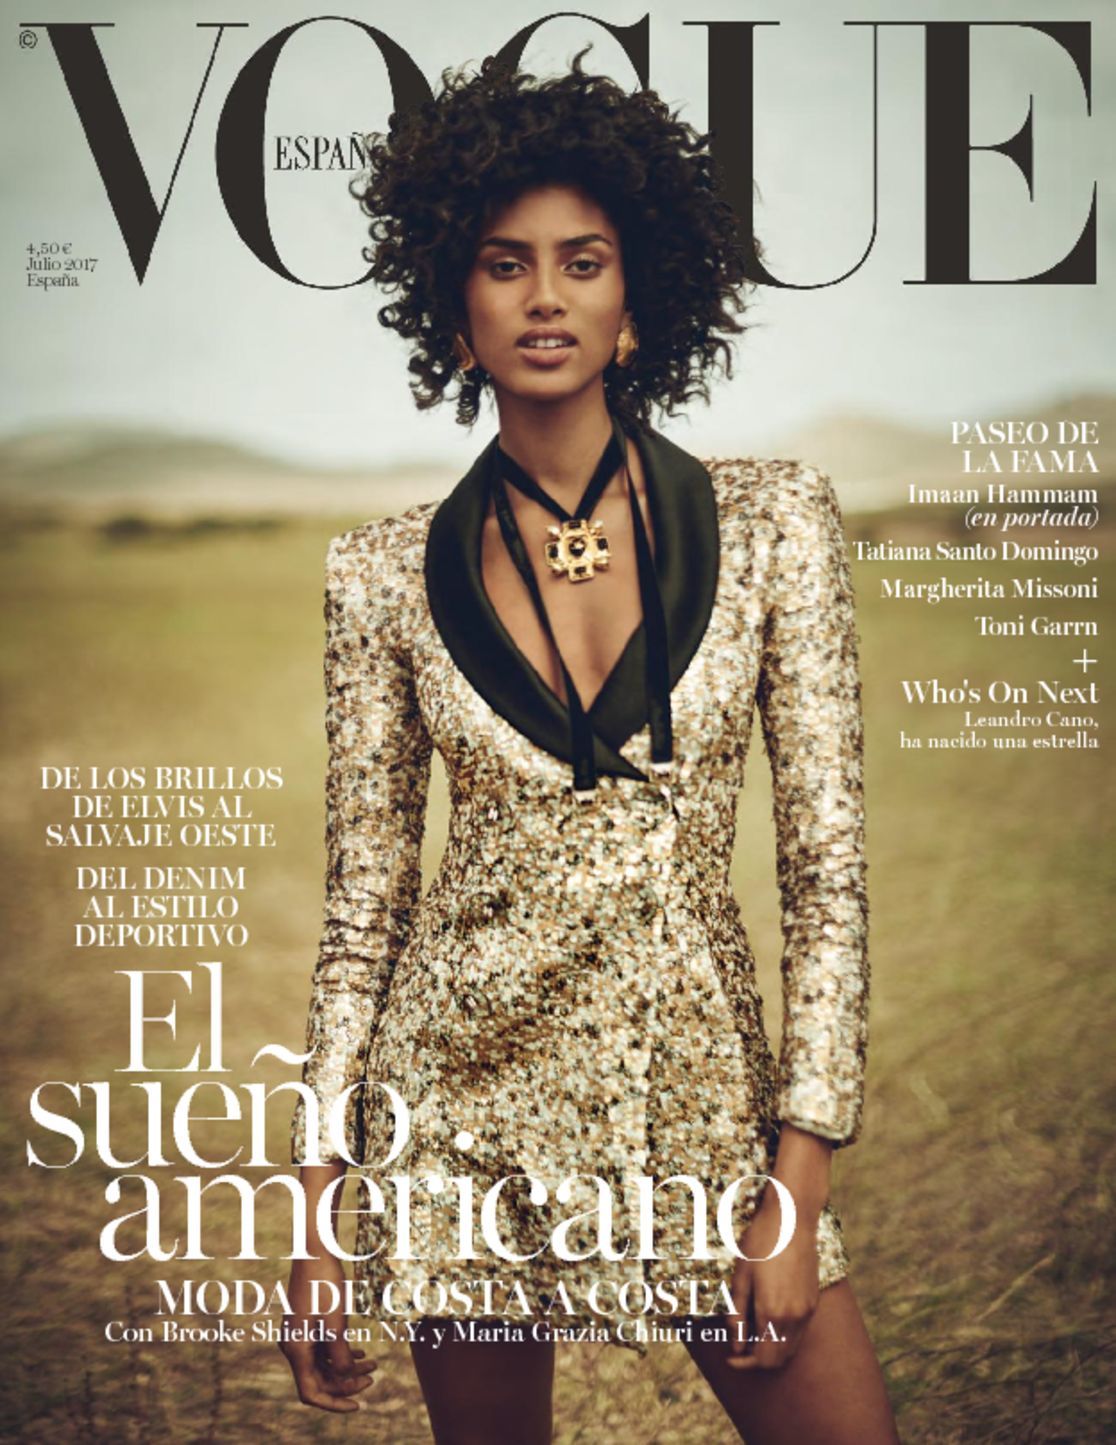 Vogue España Magazine (Digital) - DiscountMags.com